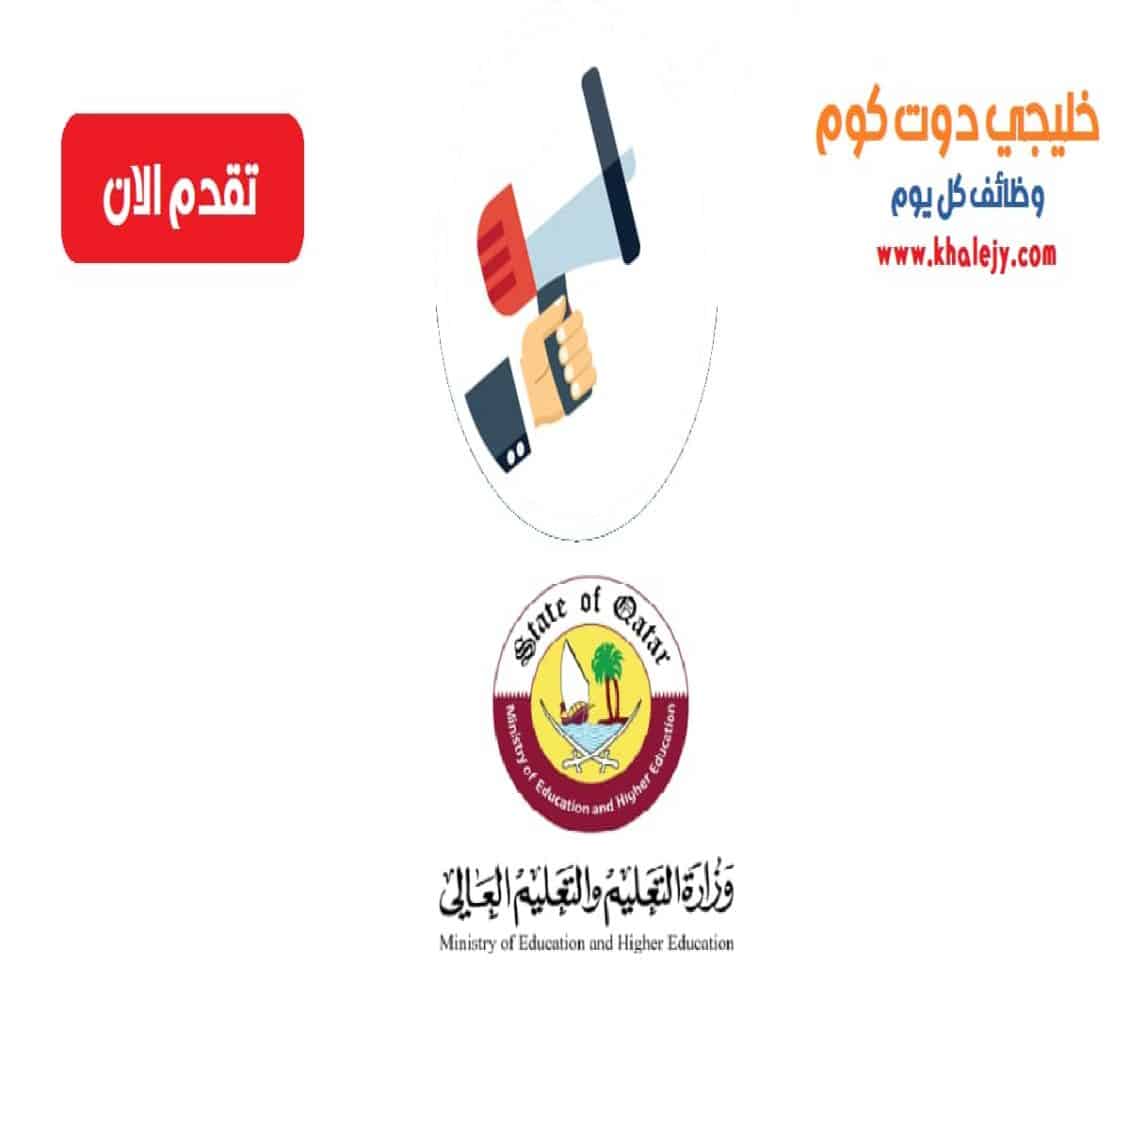 وظائف وزارة التربية والتعليم والتعليم العالي للقطريين وغير القطريين